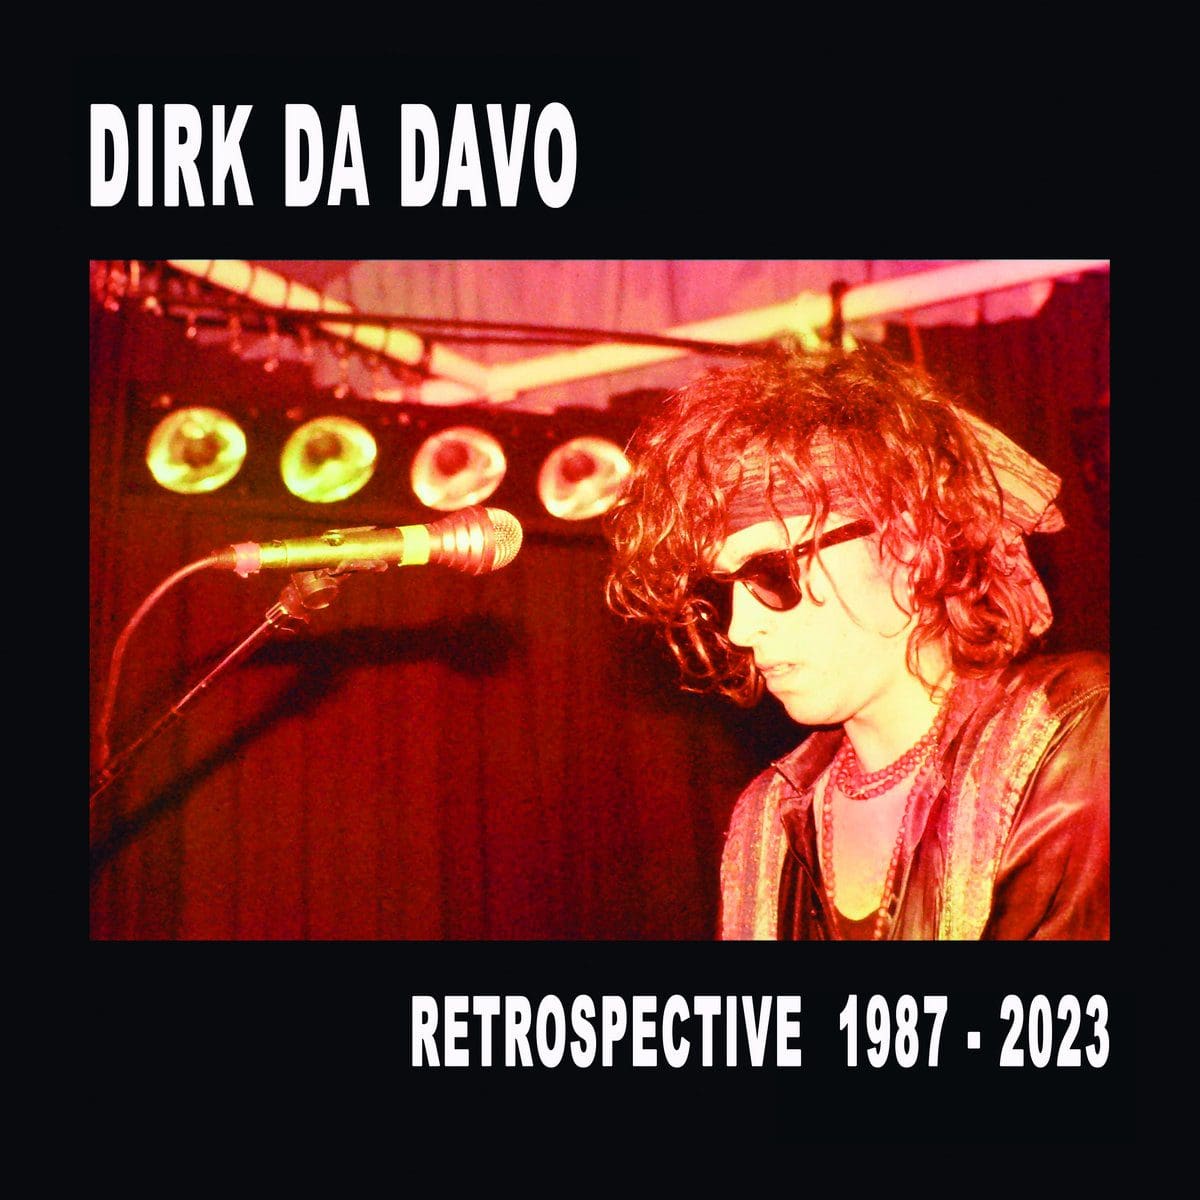 Dirk Da Davo gets 'Retrospective 1987-2023' vinyl album released in April